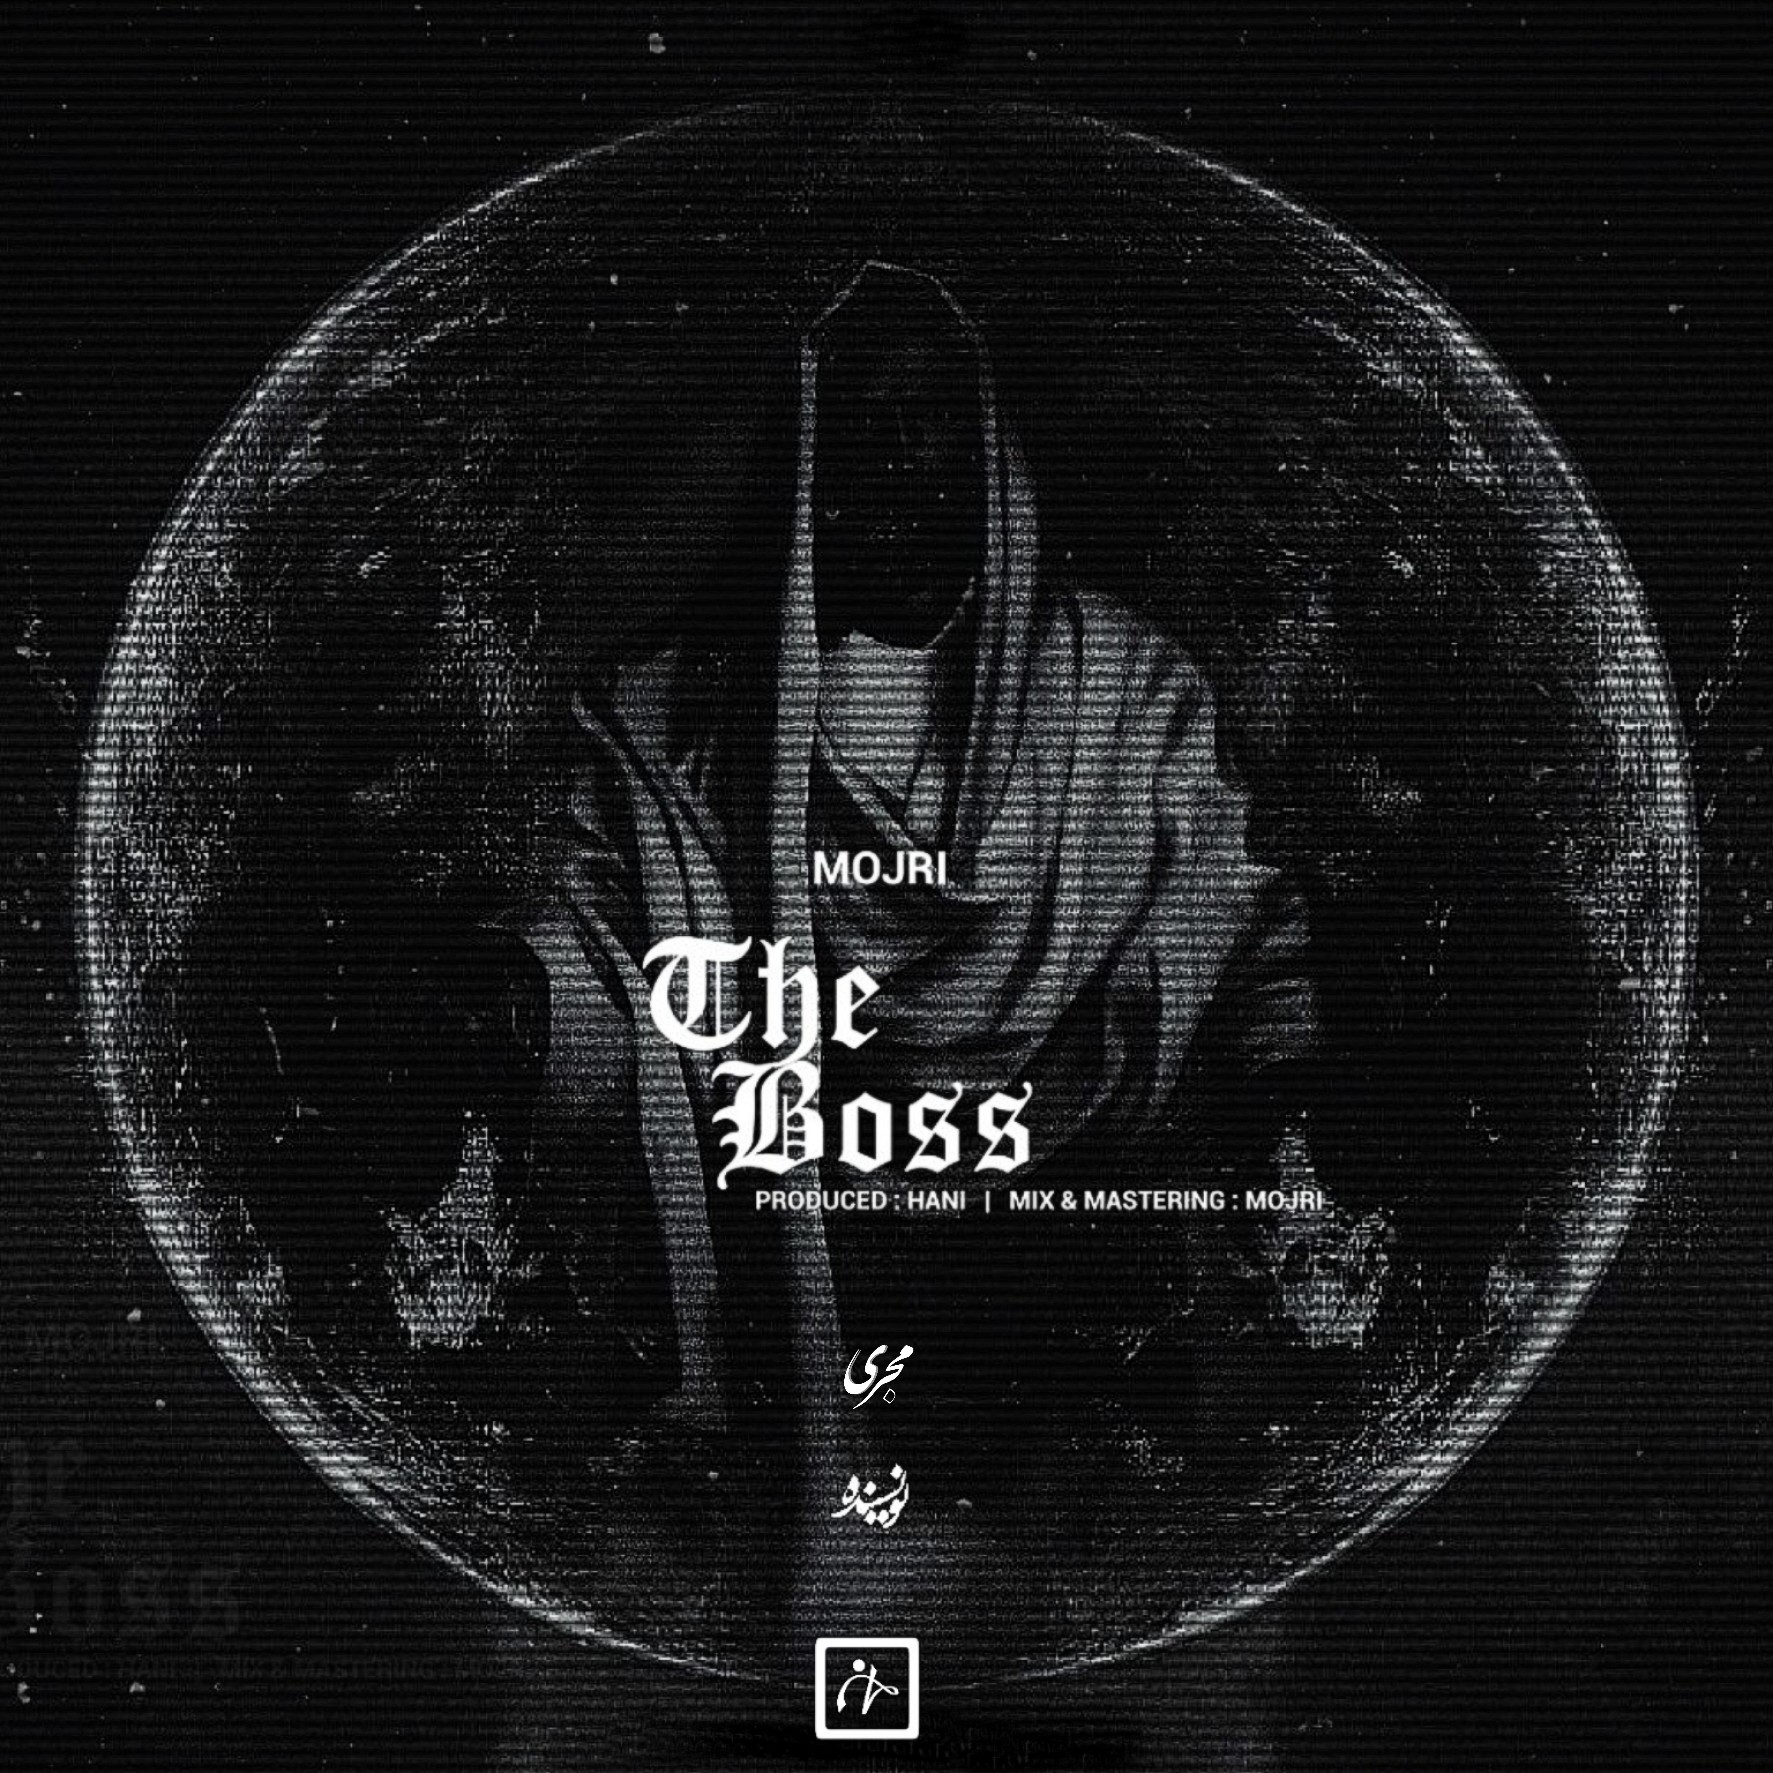 دانلود موزیک جدید و بسیار زیبای مجری به نام The Boss